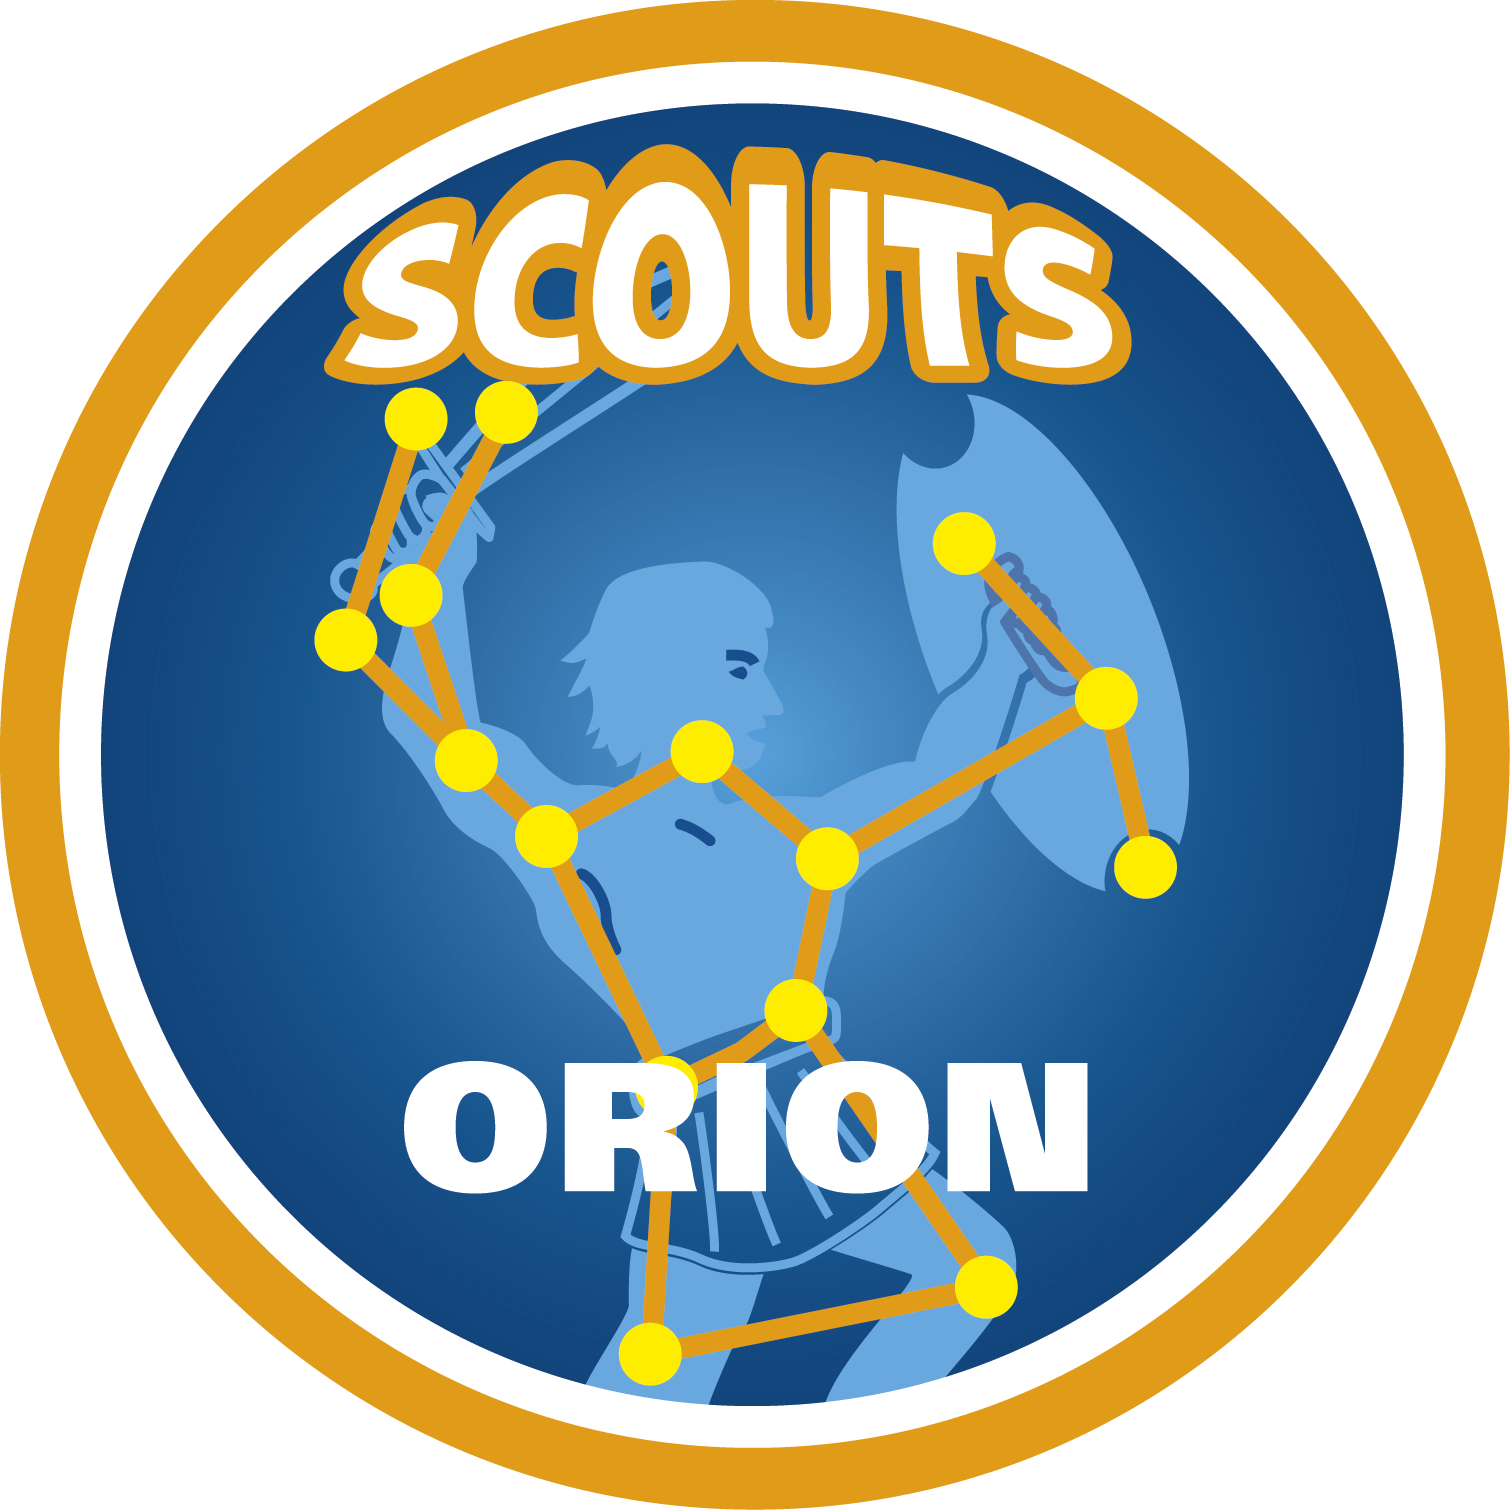 Orion Info - Graphic Design (1510x1510)